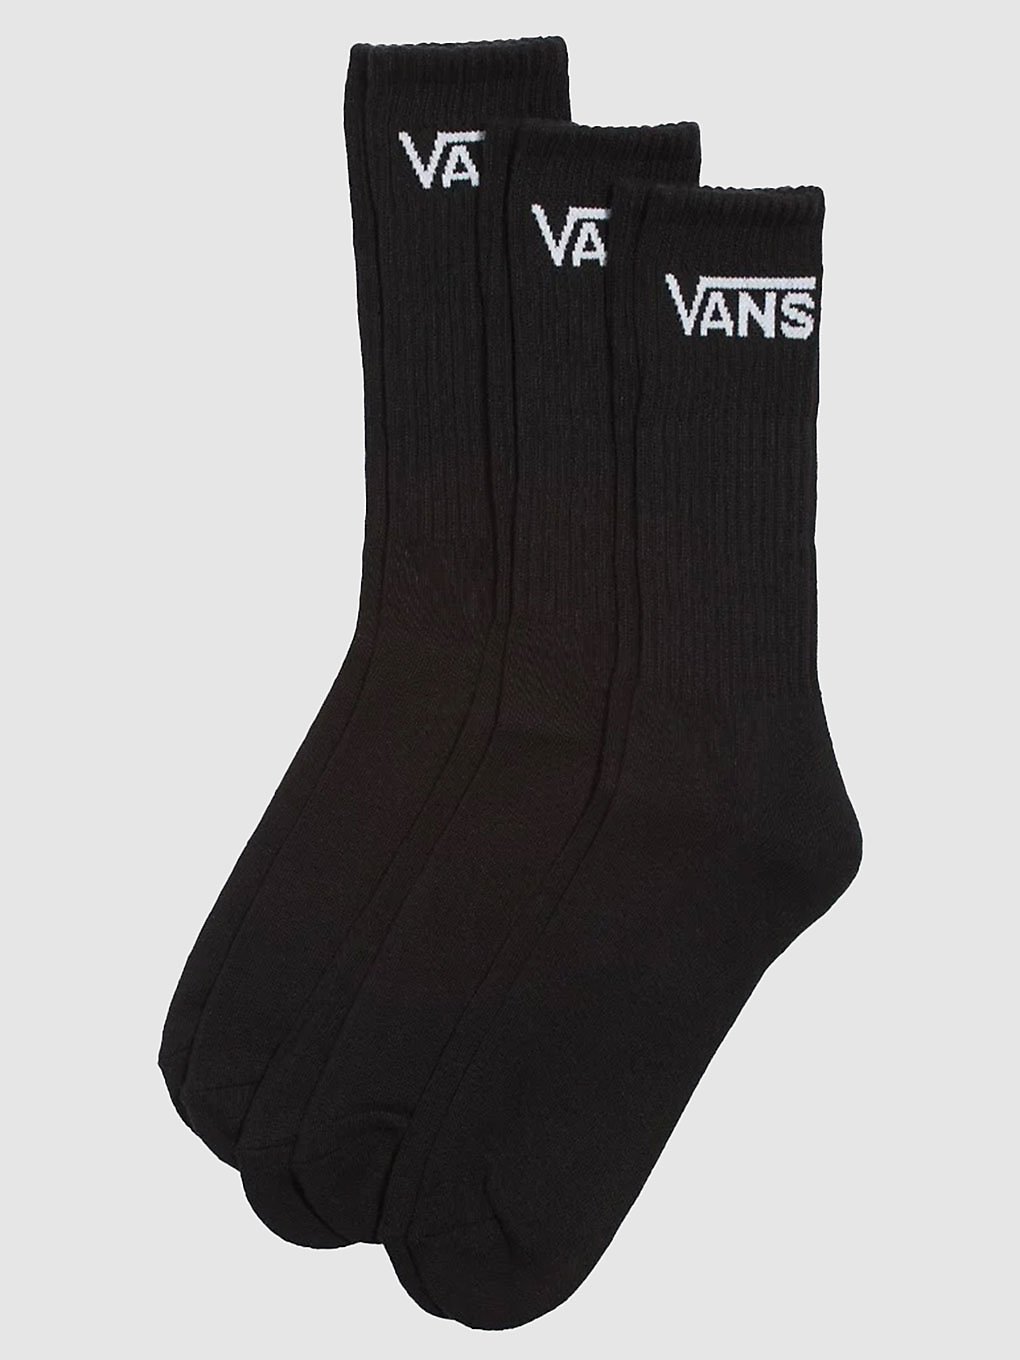 Vans Classic Crew 9.5-13 Socken rox black kaufen